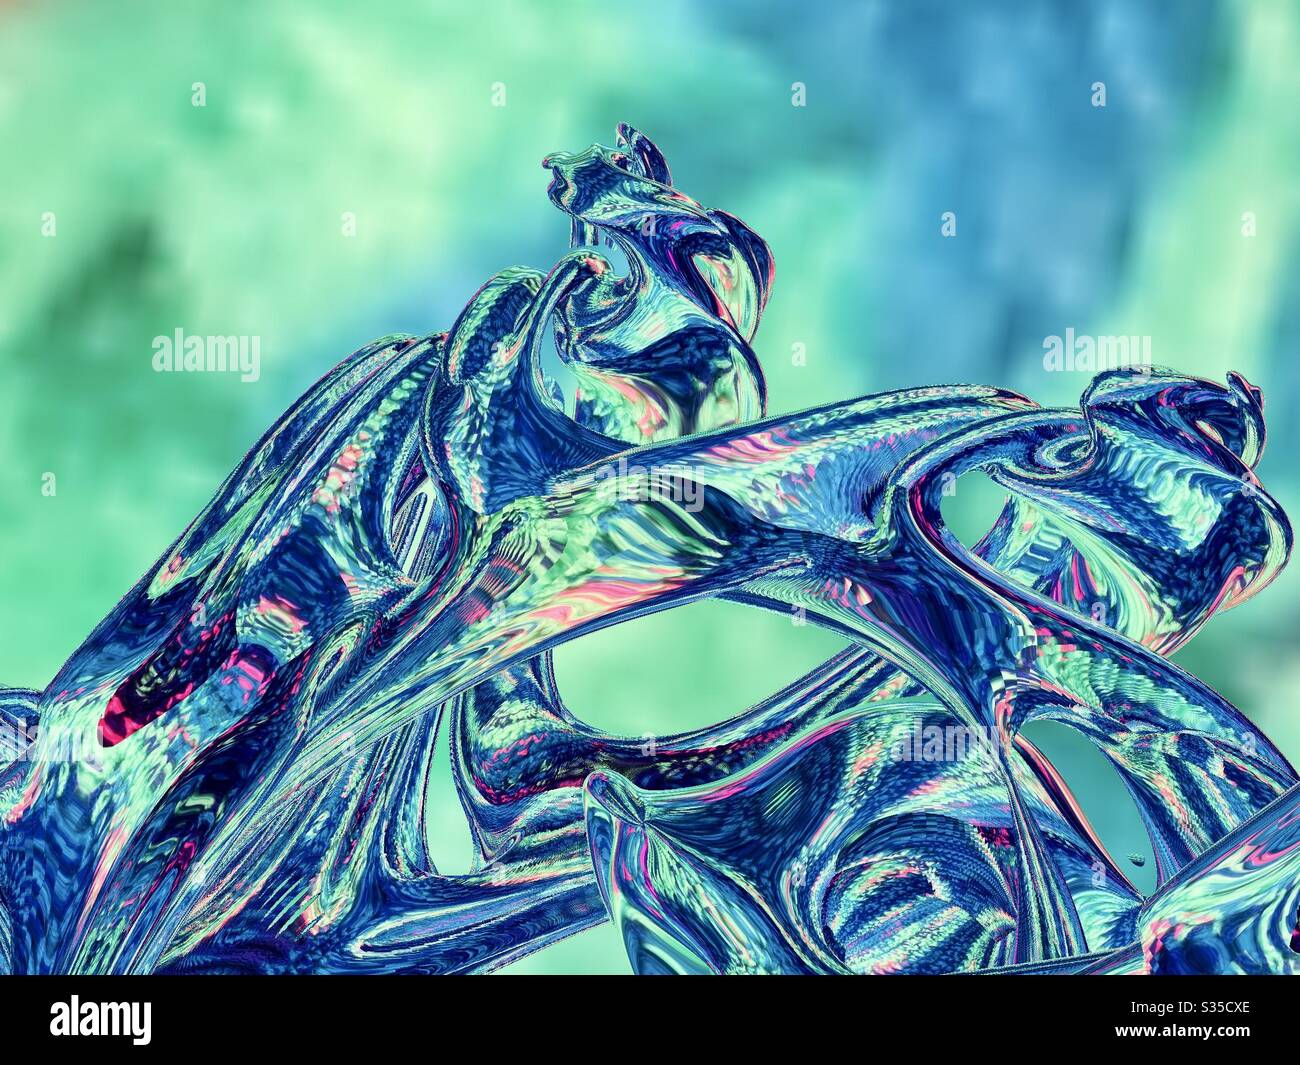 Abstrait, art numérique, art fractal, art tridimensionnel, créé avec photo originale, créativité, créatif, couleurs, vert, bleu, rose, textures, formes, espace de copie, utilisation de fond Banque D'Images